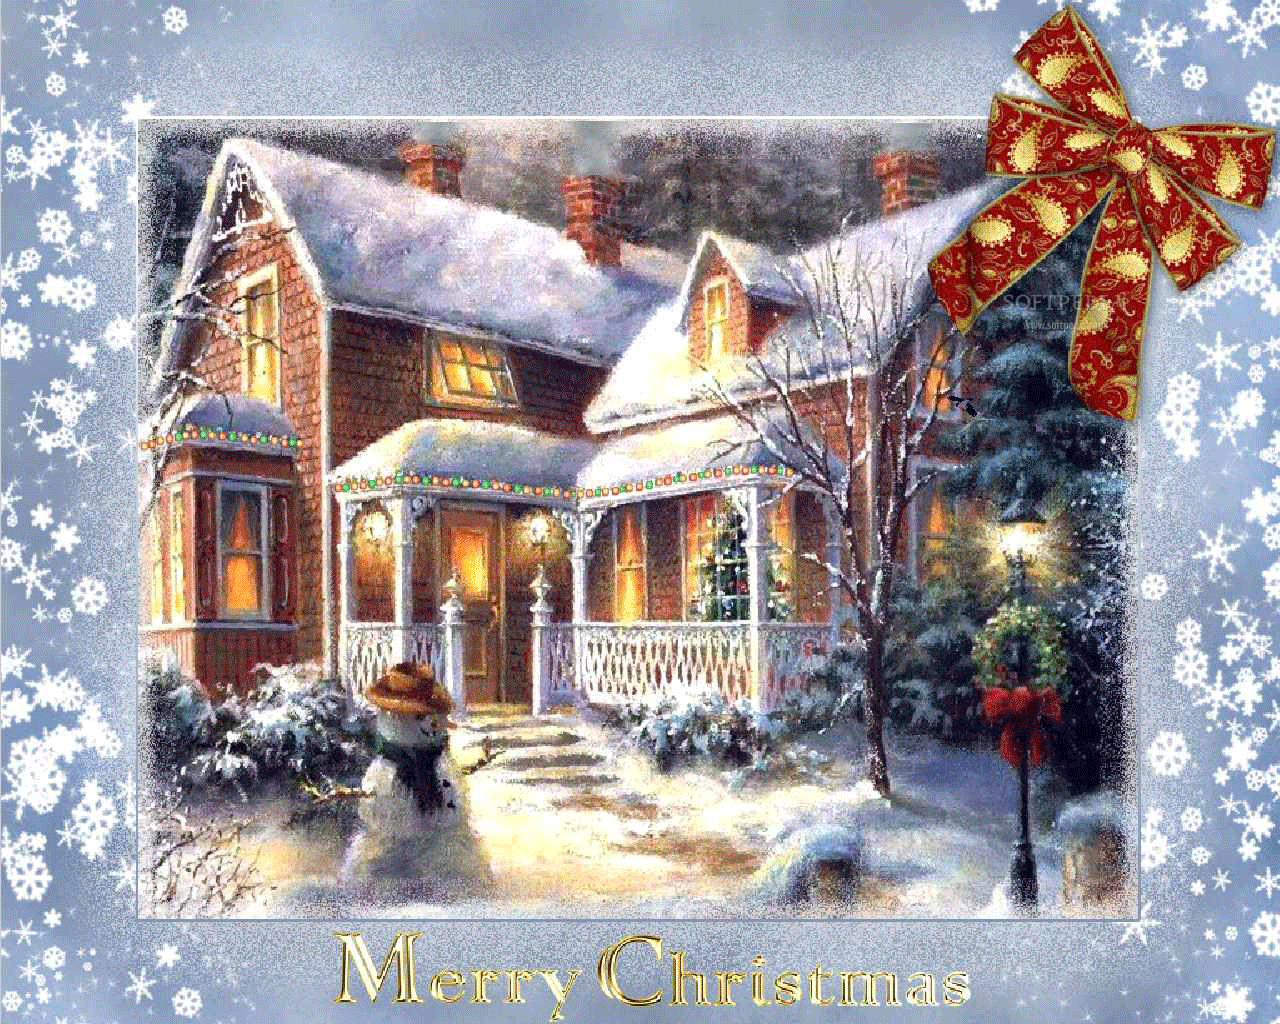 Stunning Merry Christmas Images  Christmas desktop wallpaper, Christmas  desktop, Christmas wallpaper hd